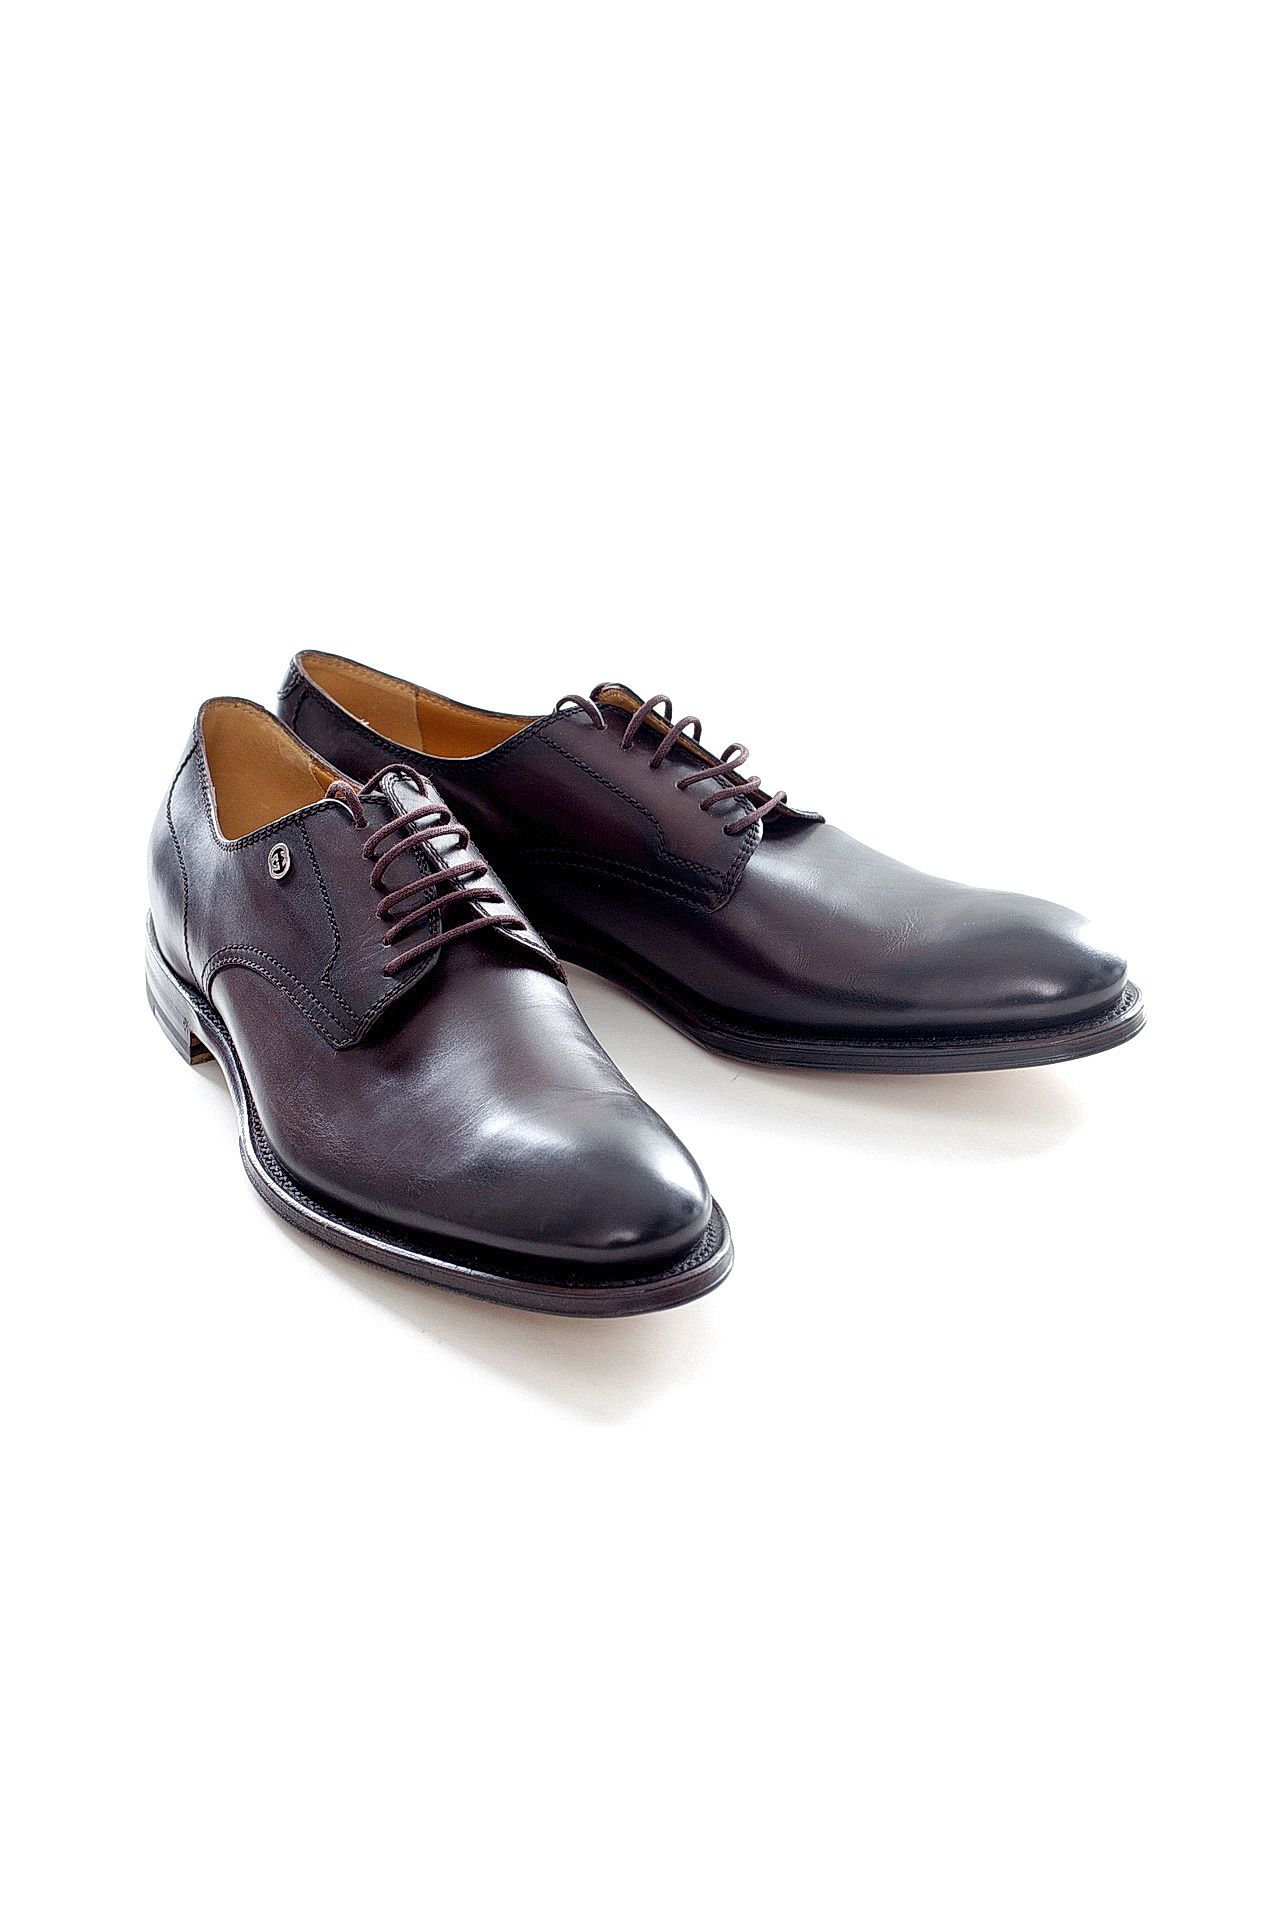 Обувь мужская Туфли GUCCI (256582BLM/17.2). Купить за 23030 руб.